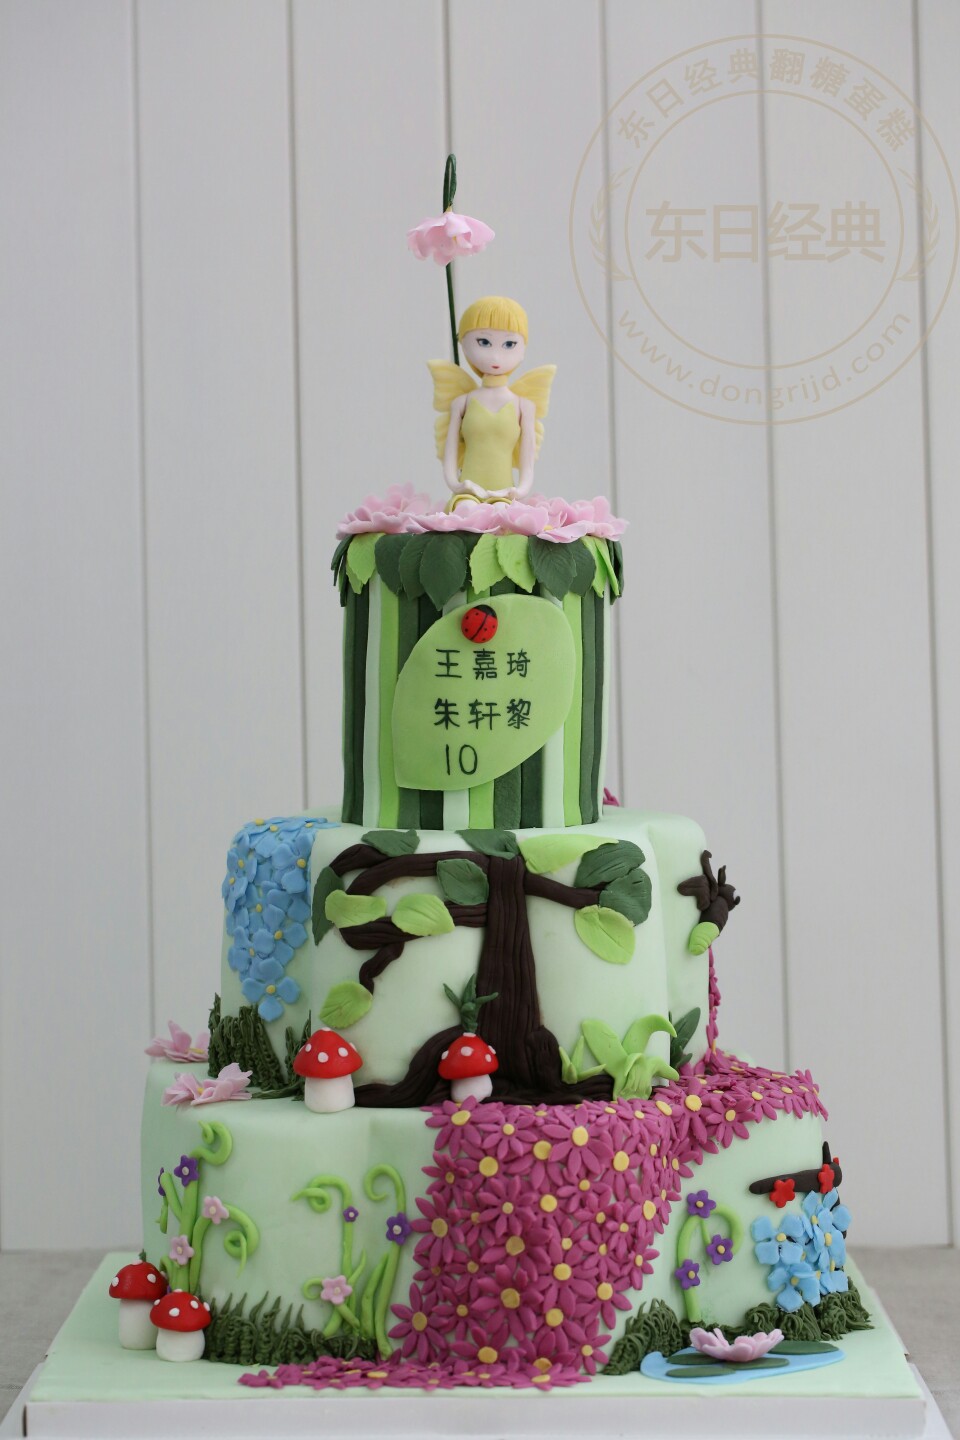 花仙子翻糖蛋糕女孩生日蛋糕创意蛋糕北京翻糖蛋糕实体店